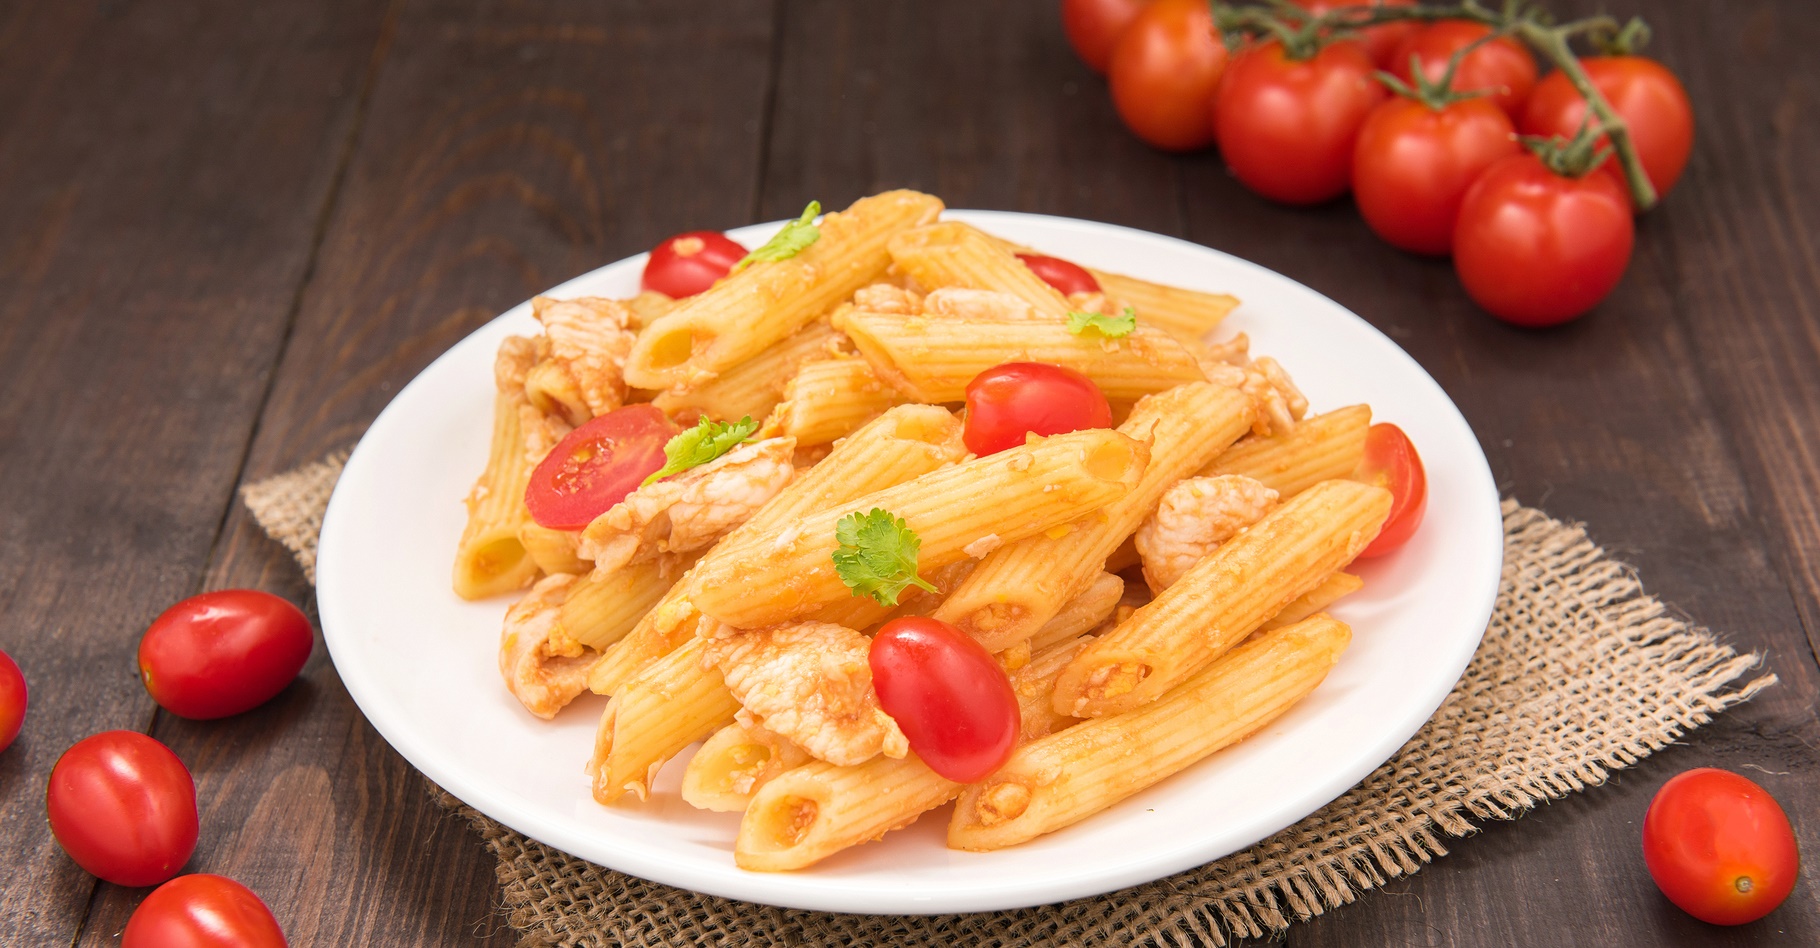 Dans cette étude (italienne), la consommation de pâtes n’était pas associée à un IMC plus élevé. © Bon Appetit, Shutterstock